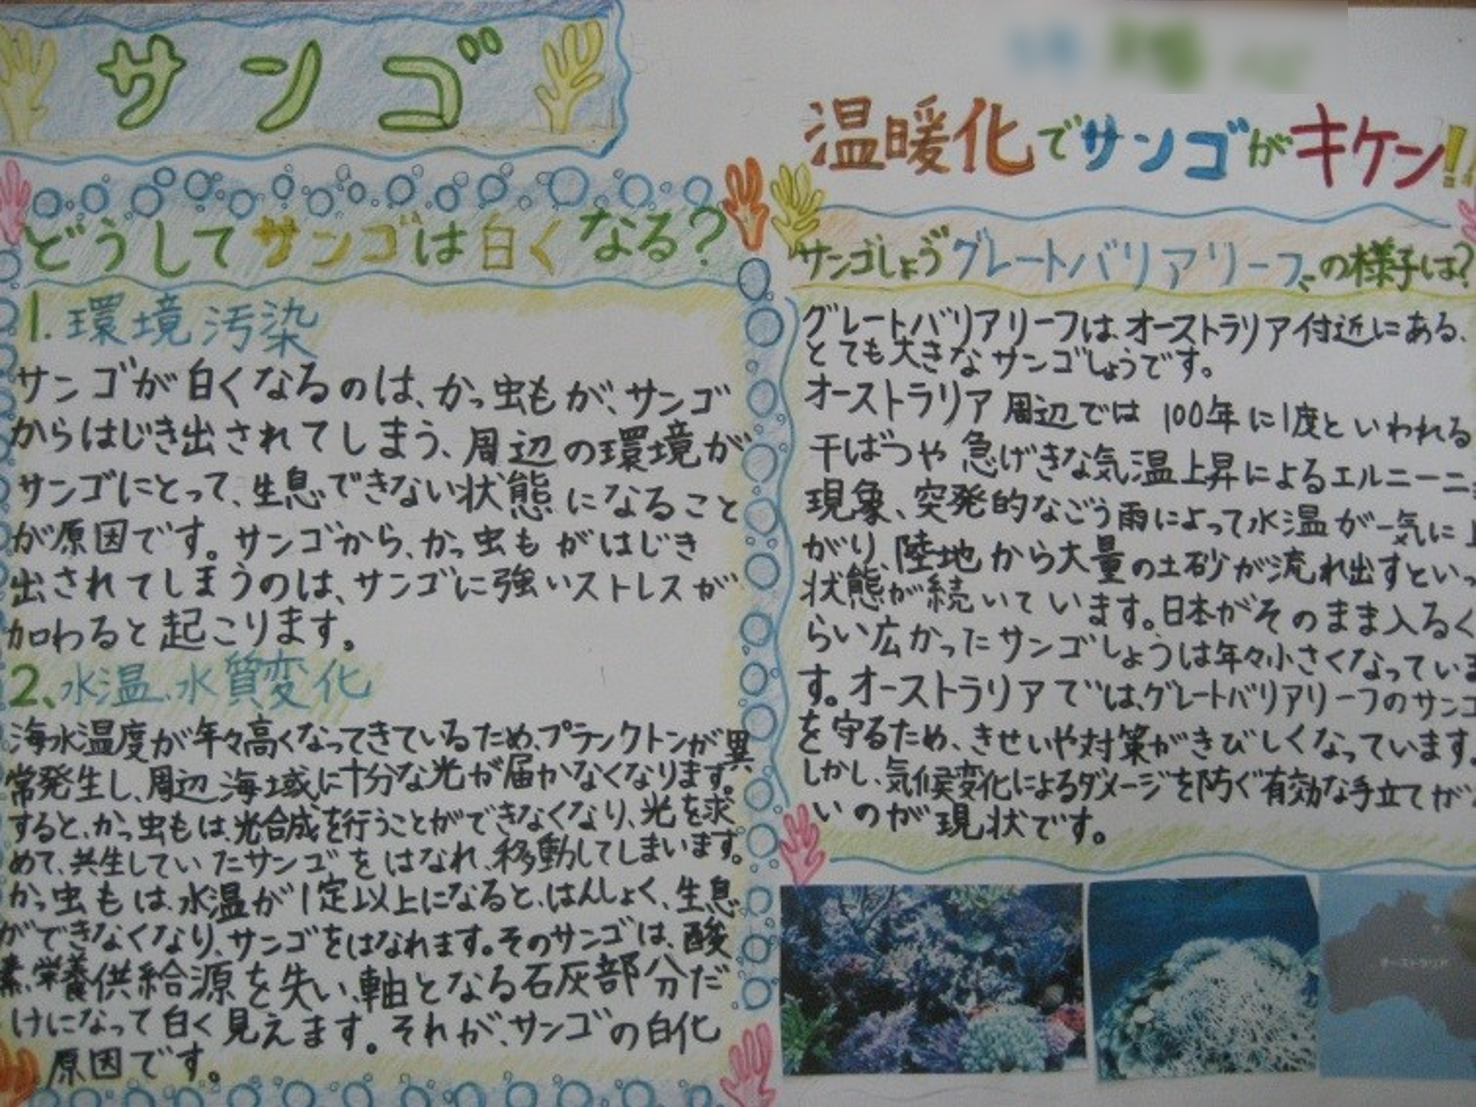 雫石町立西山小学校では地球温暖化をテーマとした 壁新聞 を作成しました トピックス いわてわんこ節電所